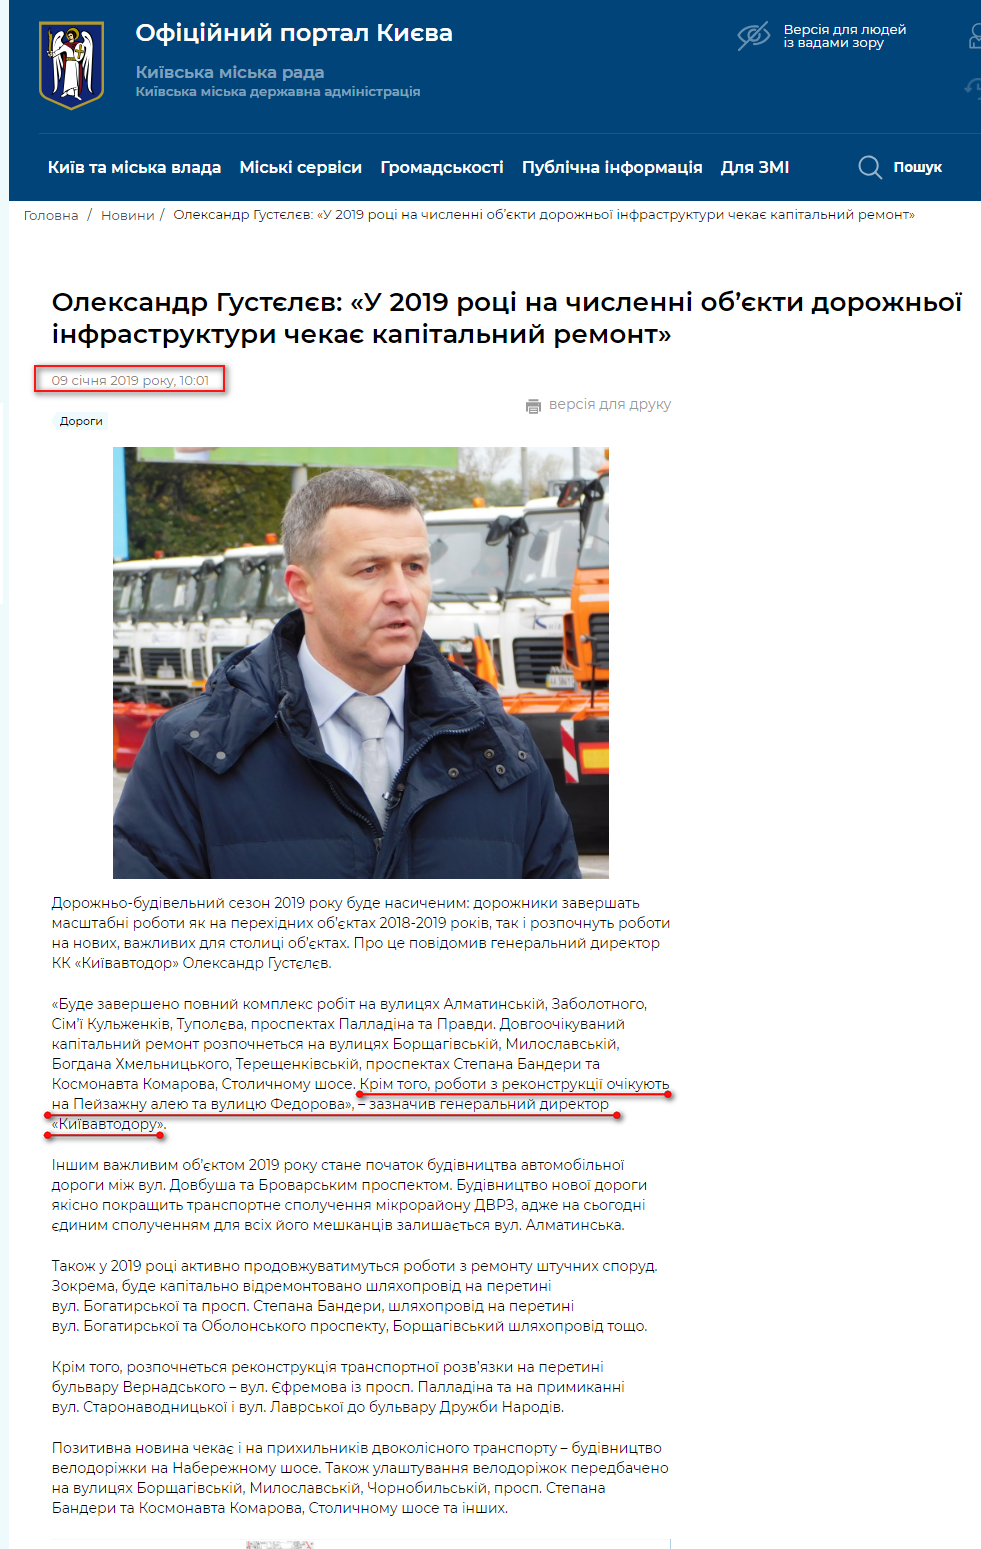 https://kyivcity.gov.ua/news/oleksandr_gustyelyev_u_2019_rotsi_na_chislenni_obyekti_dorozhno_infrastrukturi_chekaye_kapitalniy_remont.html